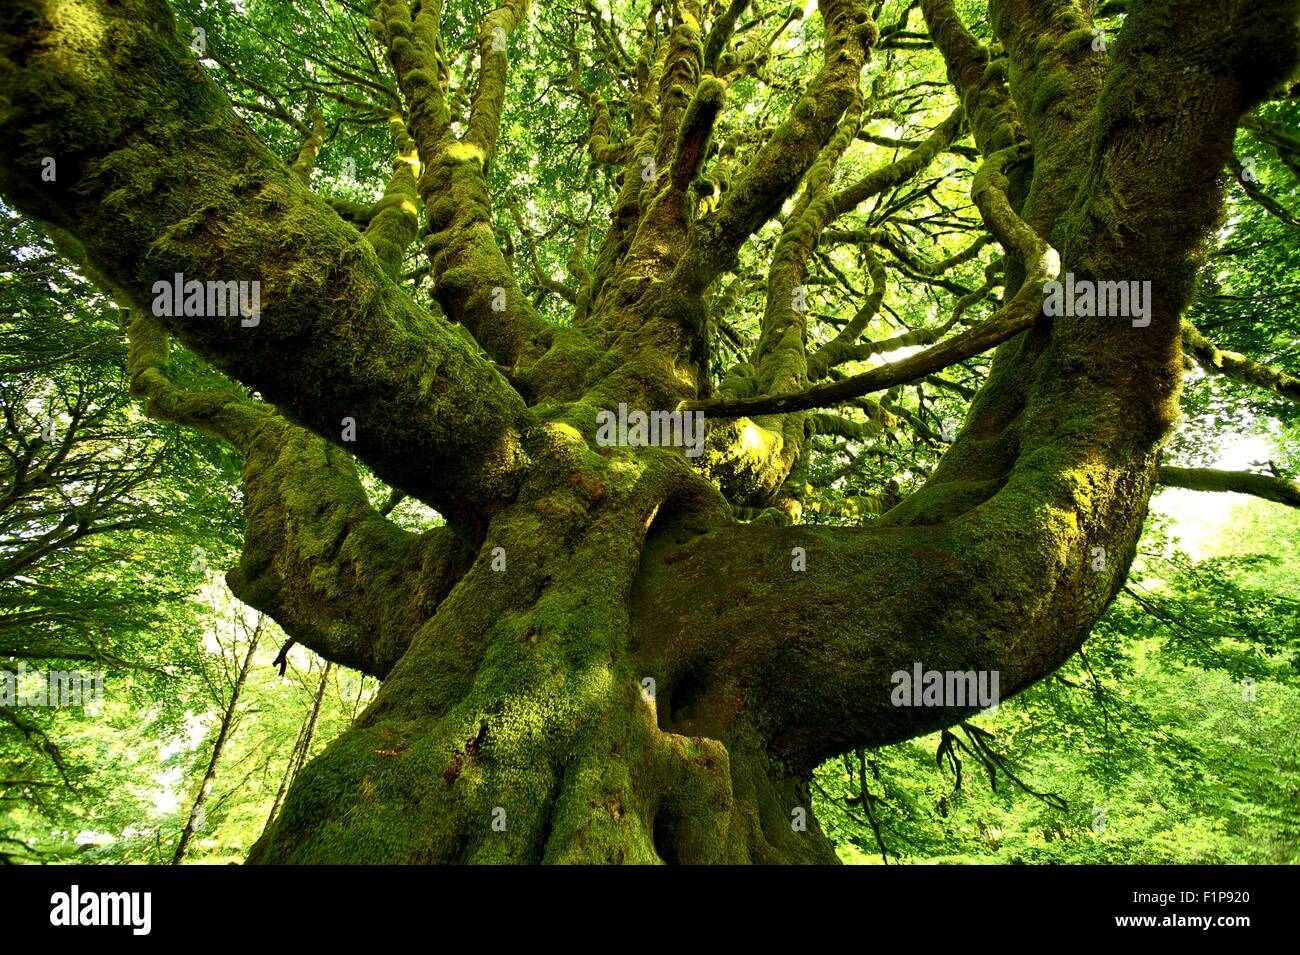 Strano vecchio Mossy Tree - albero della foresta pluviale. Stato di Washington il parco nazionale di Olympic. Natura raccolta di fotografie. Foto Stock